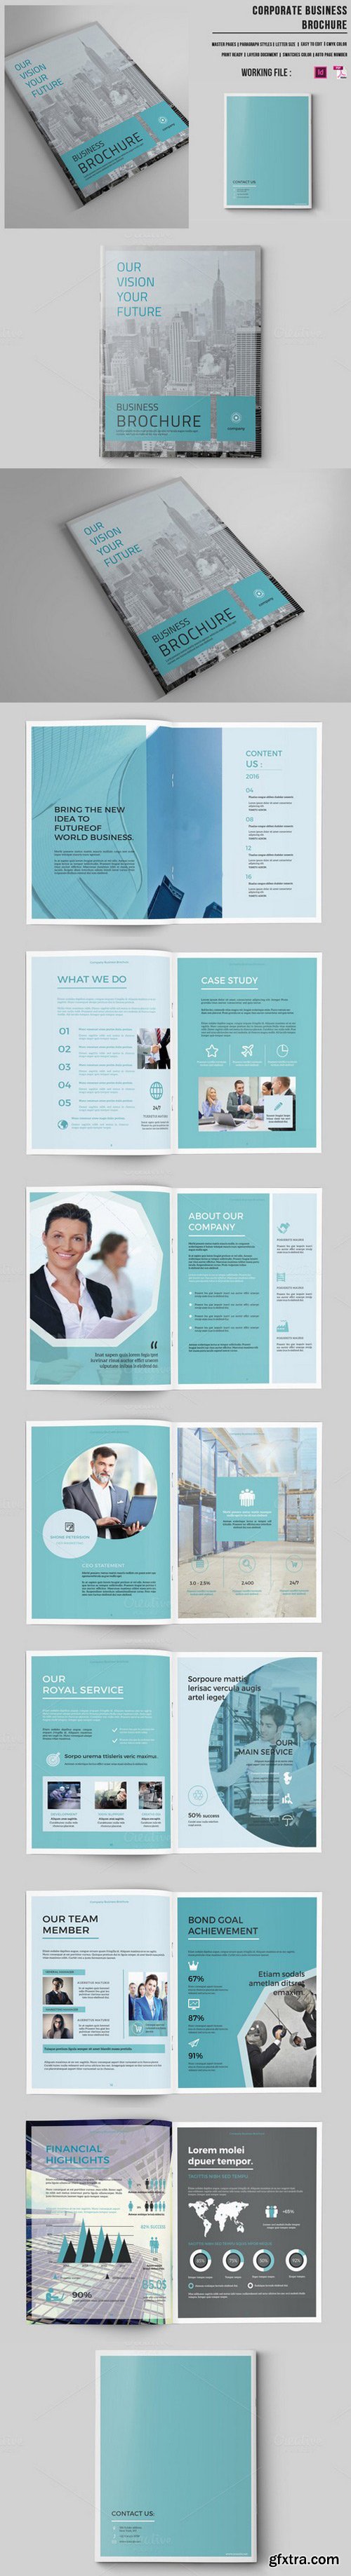 CM - Business Brochure | 16 Pages |-v421 552767